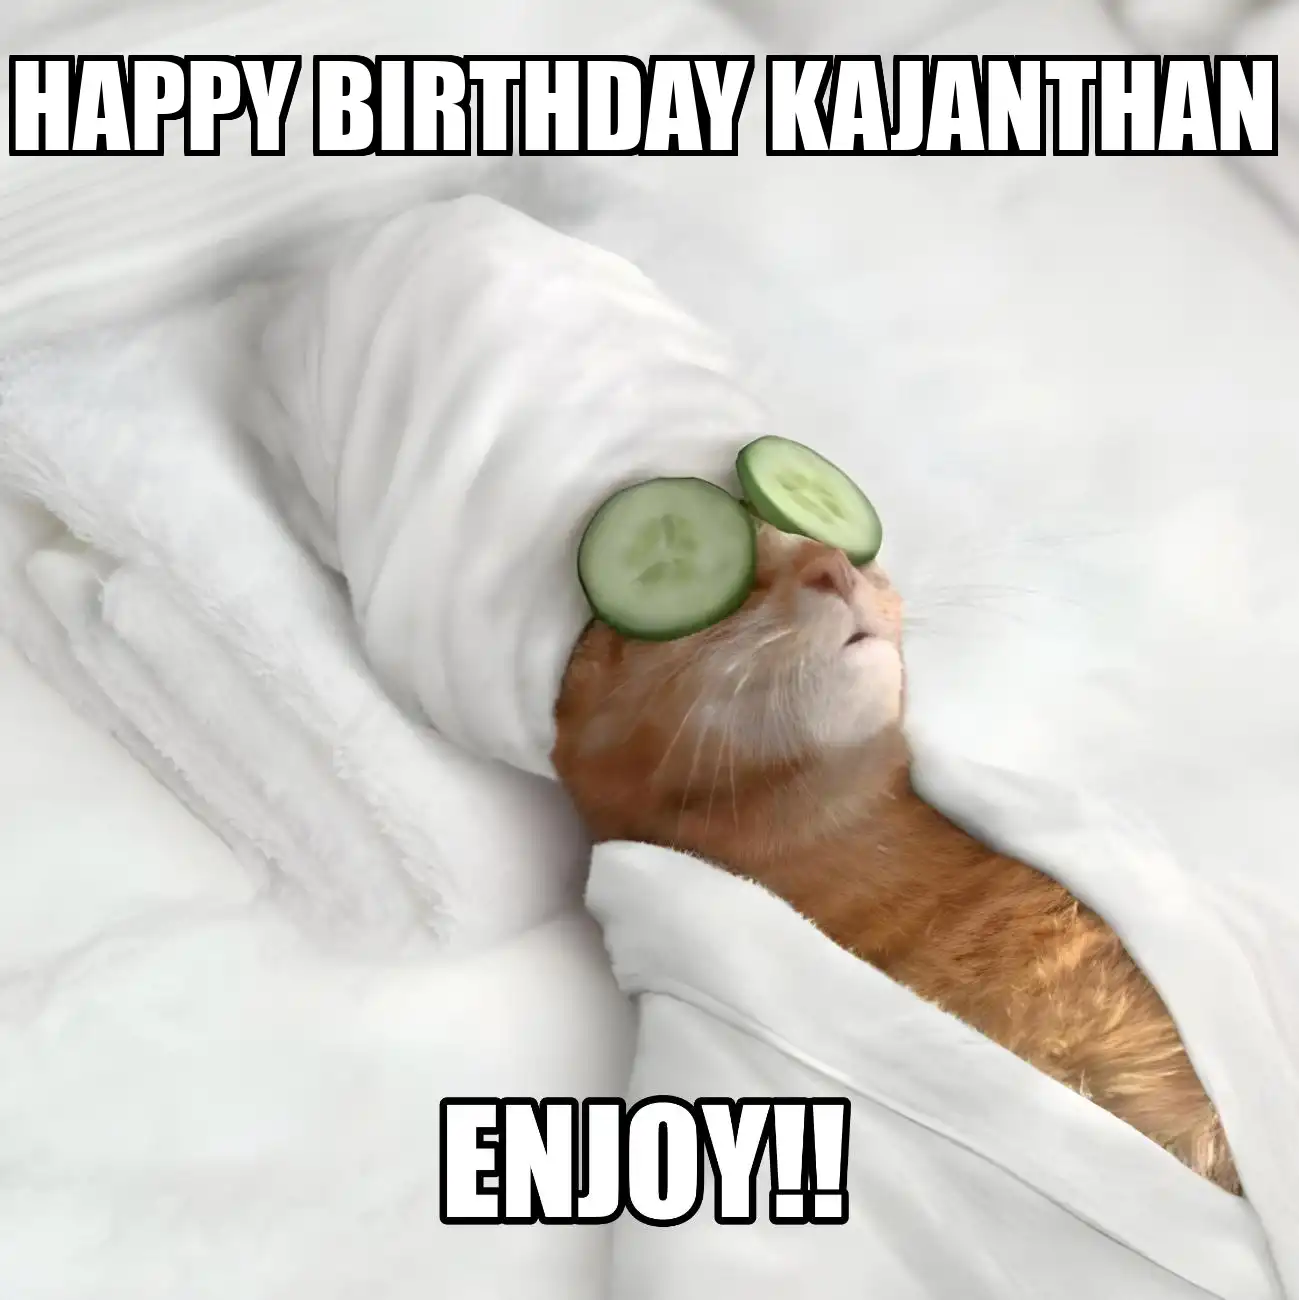 Happy Birthday Kajanthan Enjoy Cat Meme